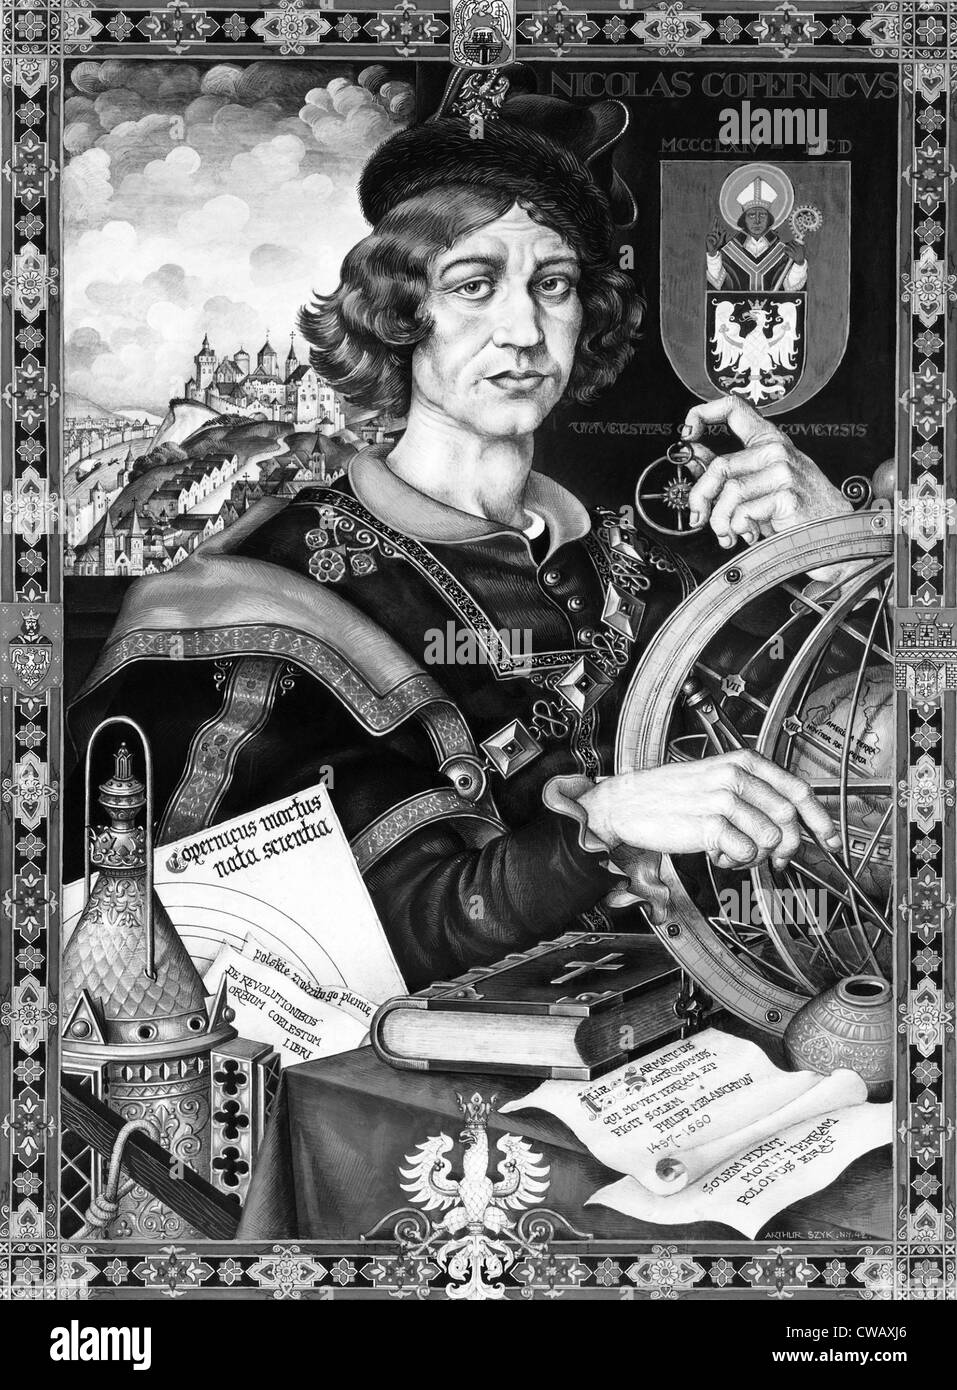 EV1823 - astronome polonais Nicolas Copernic, 1543 AD. Avec la permission de la CSU : Archives / Everett Collection Banque D'Images